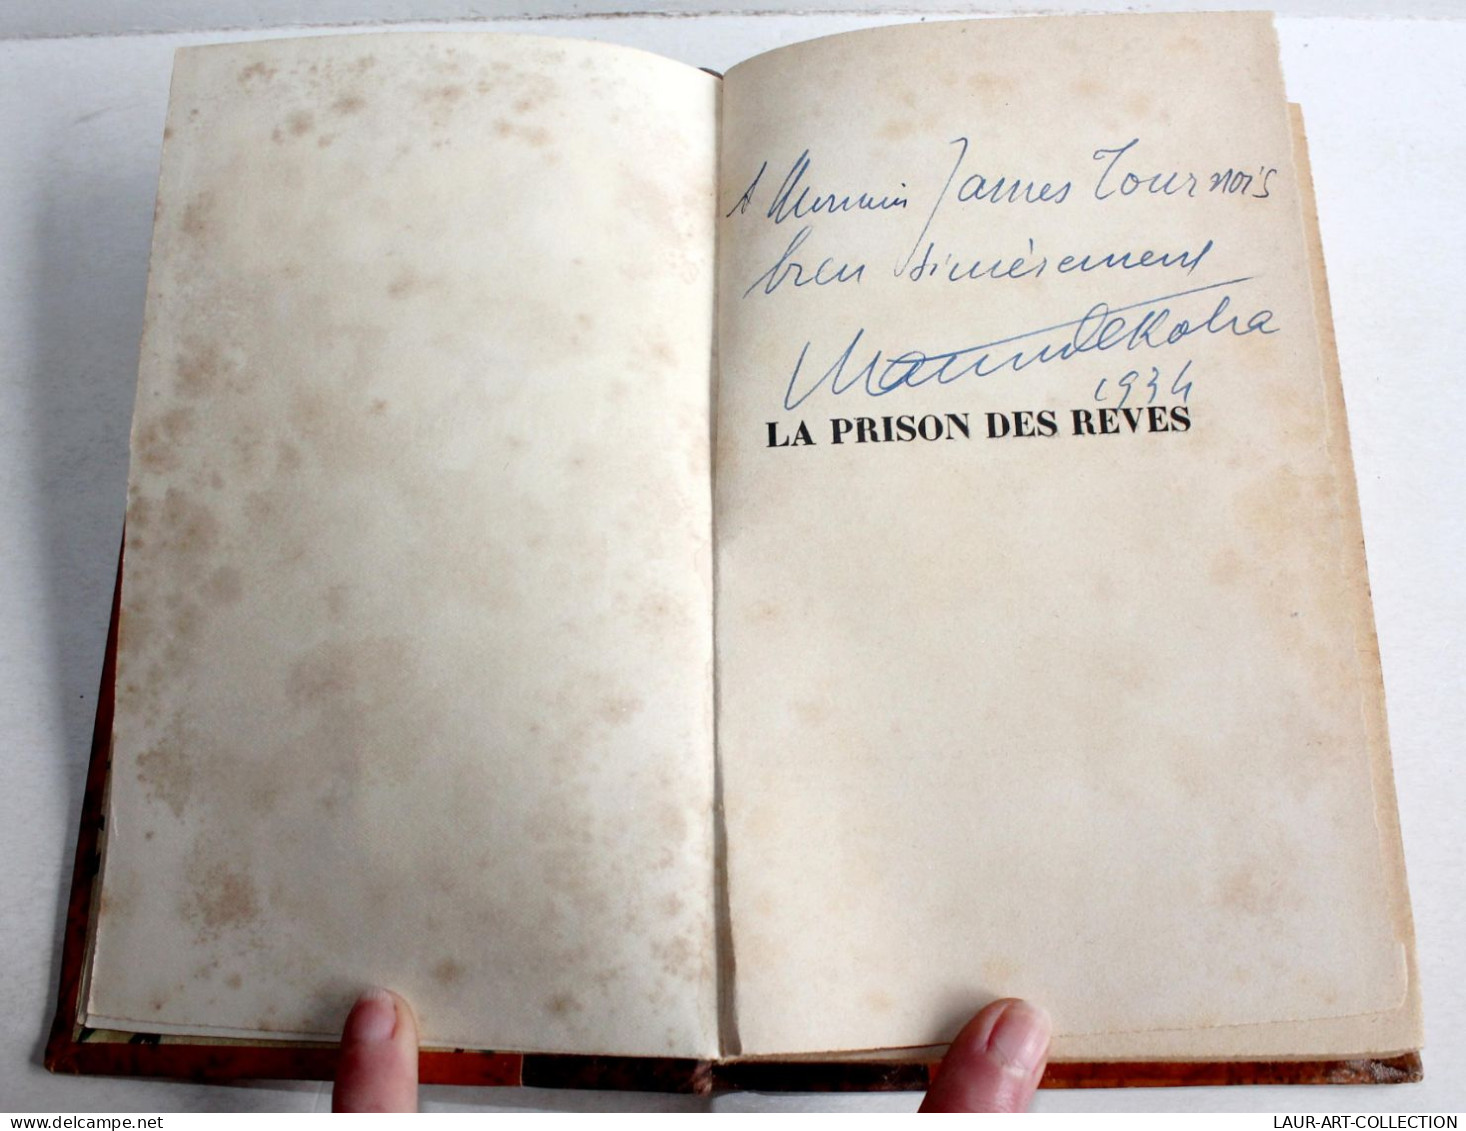 ENVOI D'AUTEUR MAURICE DEKOBRA EDITION ORIGINAL PRISON DES REVES 1934 BAUDINIERE / ANCIEN LIVRE XXe SIECLE (2204.36) - Autographed